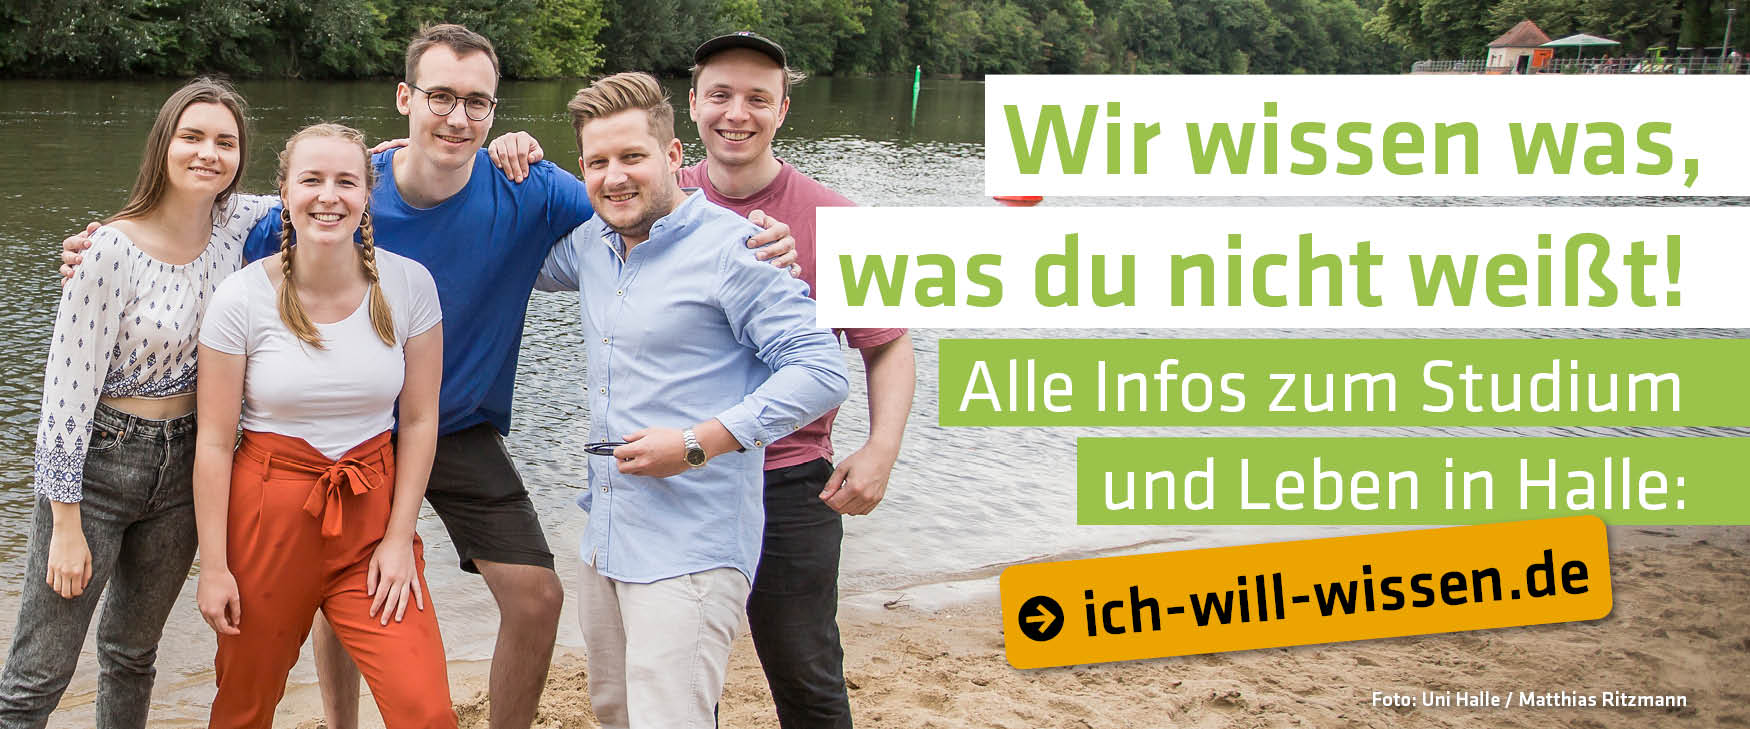 www.ich-will-wissen.de